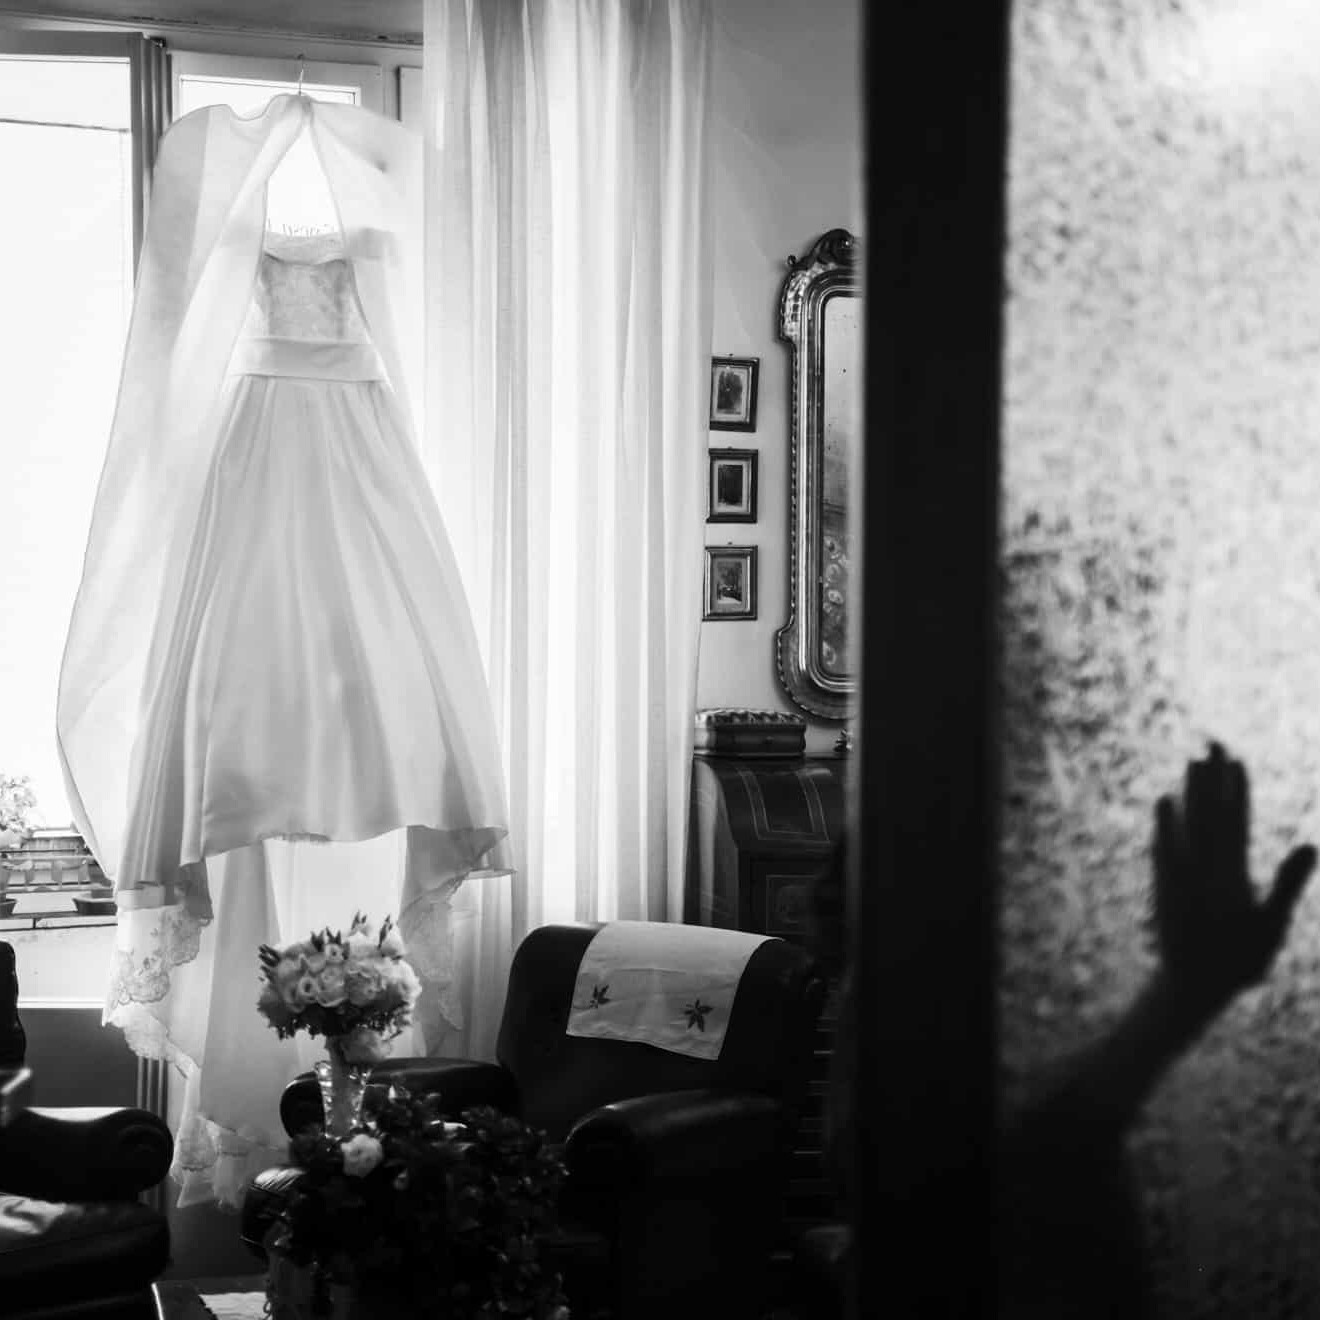 Una mano appoggiata sul vetro con l'abito della sposa di sfondo